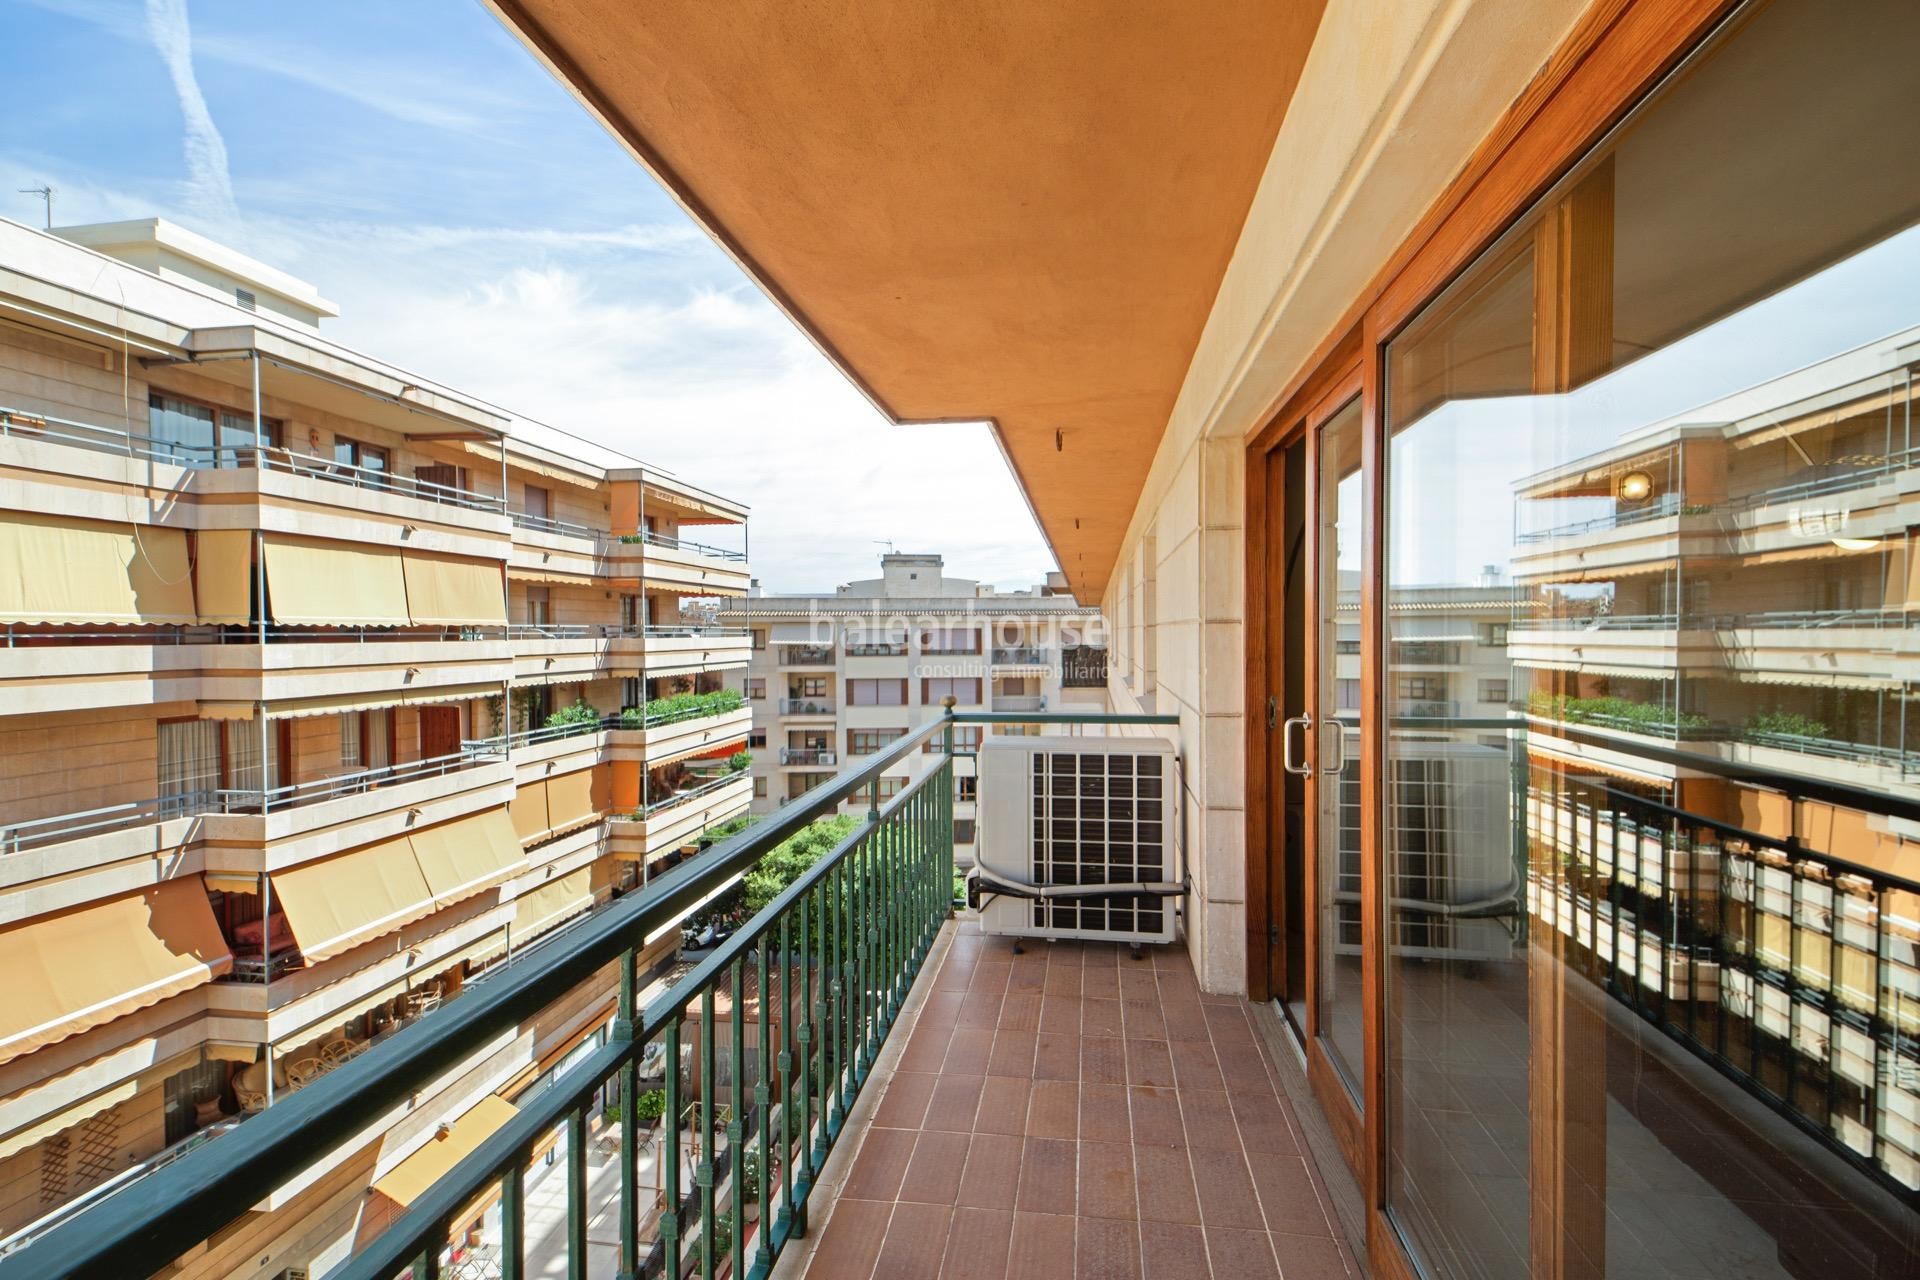 Hervorragende und helle Wohnung von großen Abmessungen im Zentrum von Palma gelegen.